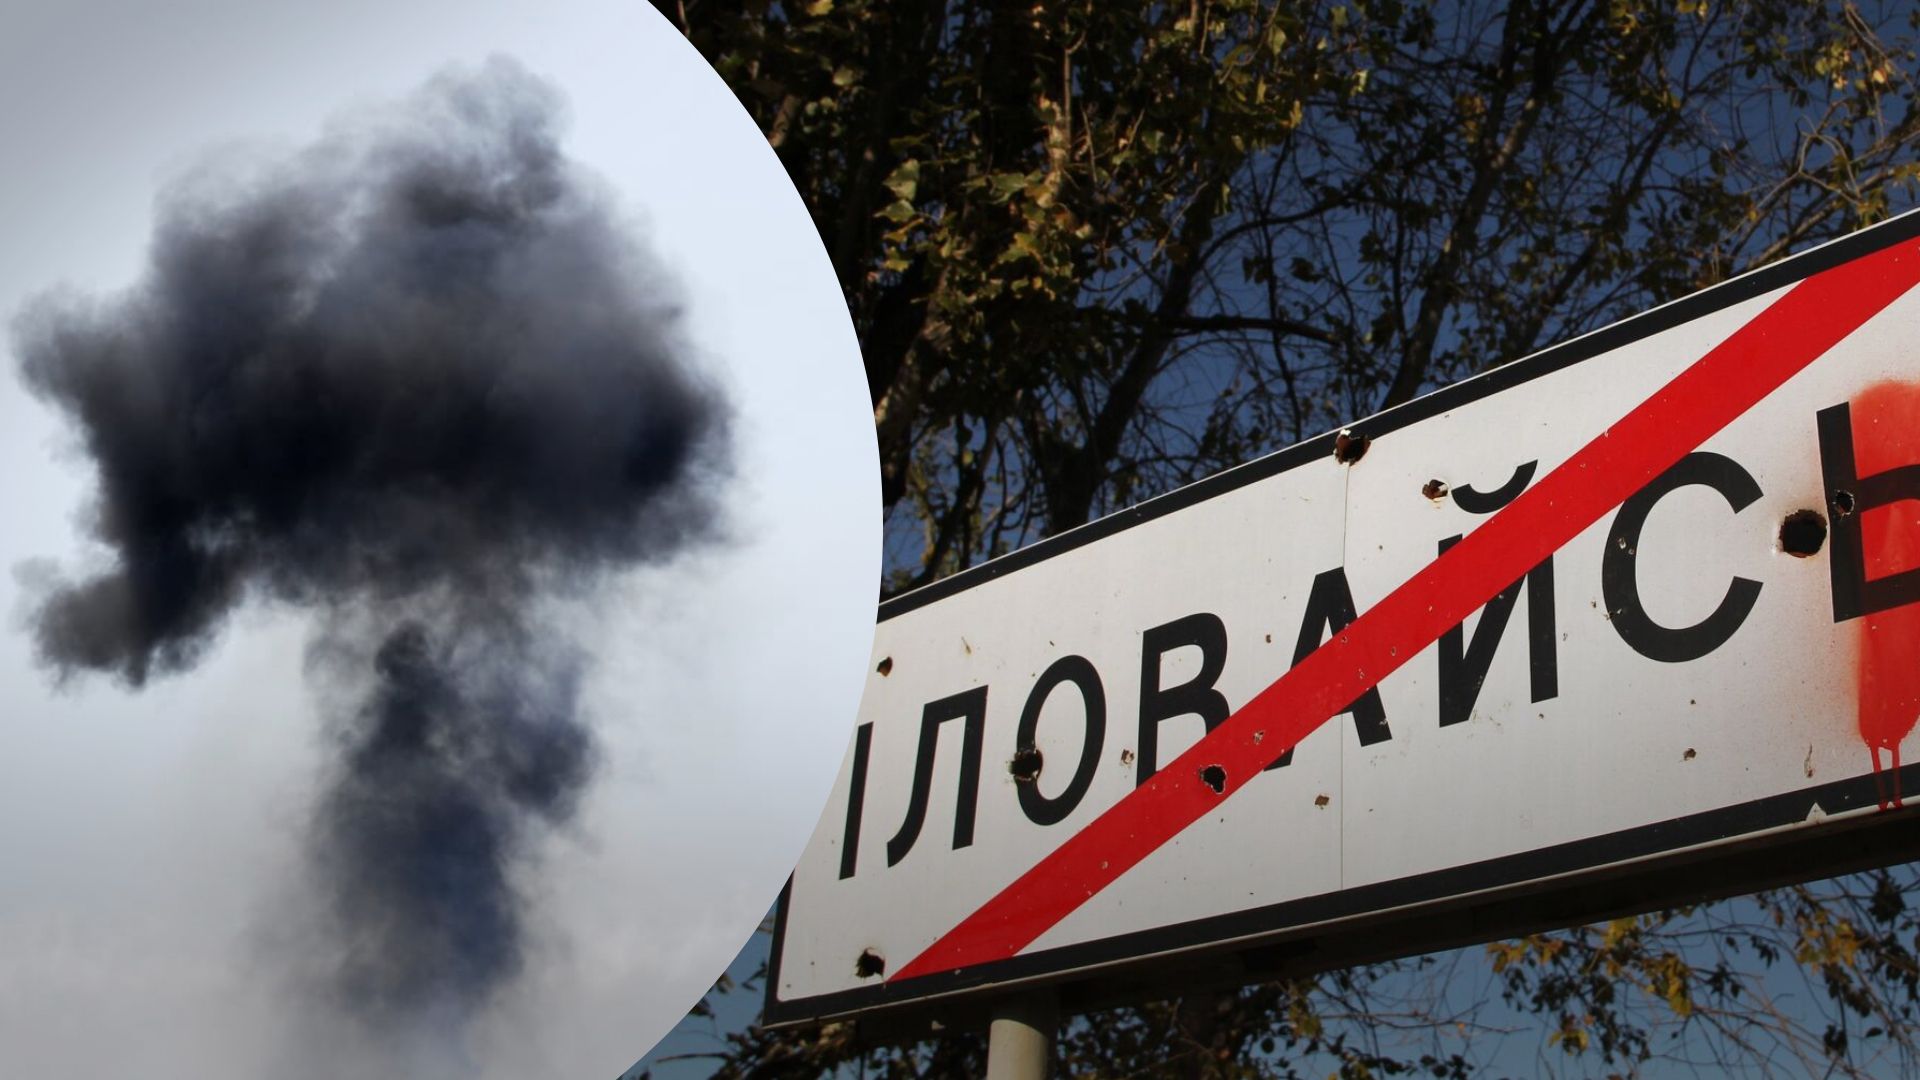 Взрывы в Иловайске 29 января 2023 года - как выглядит железная дорога, в которую попали ракеты